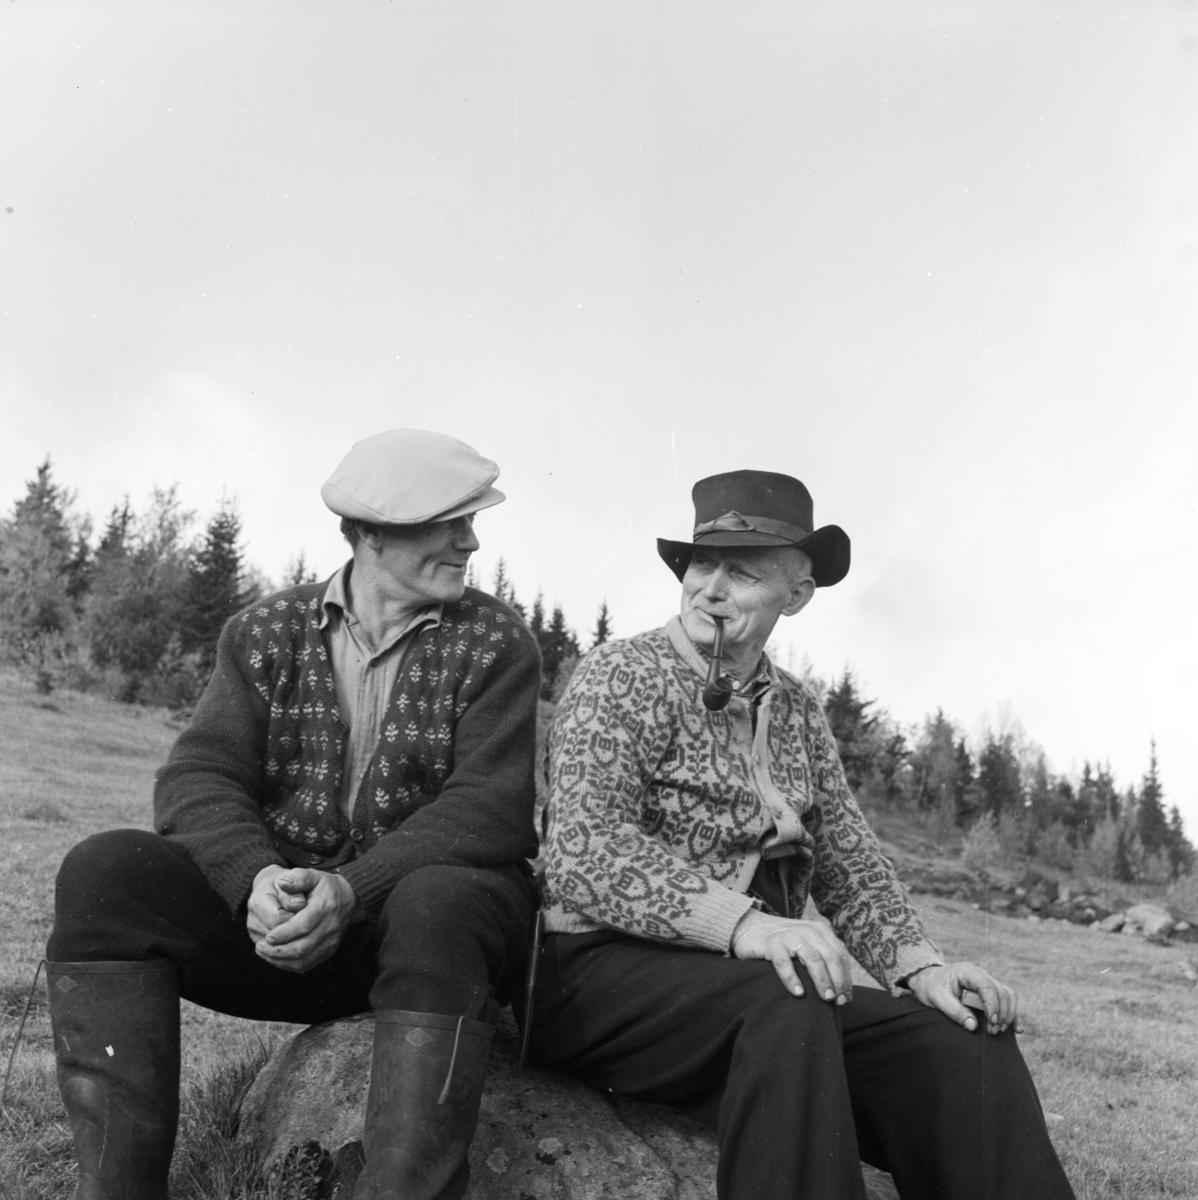 Dagfinn Grønosets foto av Laurits Engen og Ole P. Bjørnstad. To menn som sitter på en stein og ser på hverandre, den ene røyker pipe.